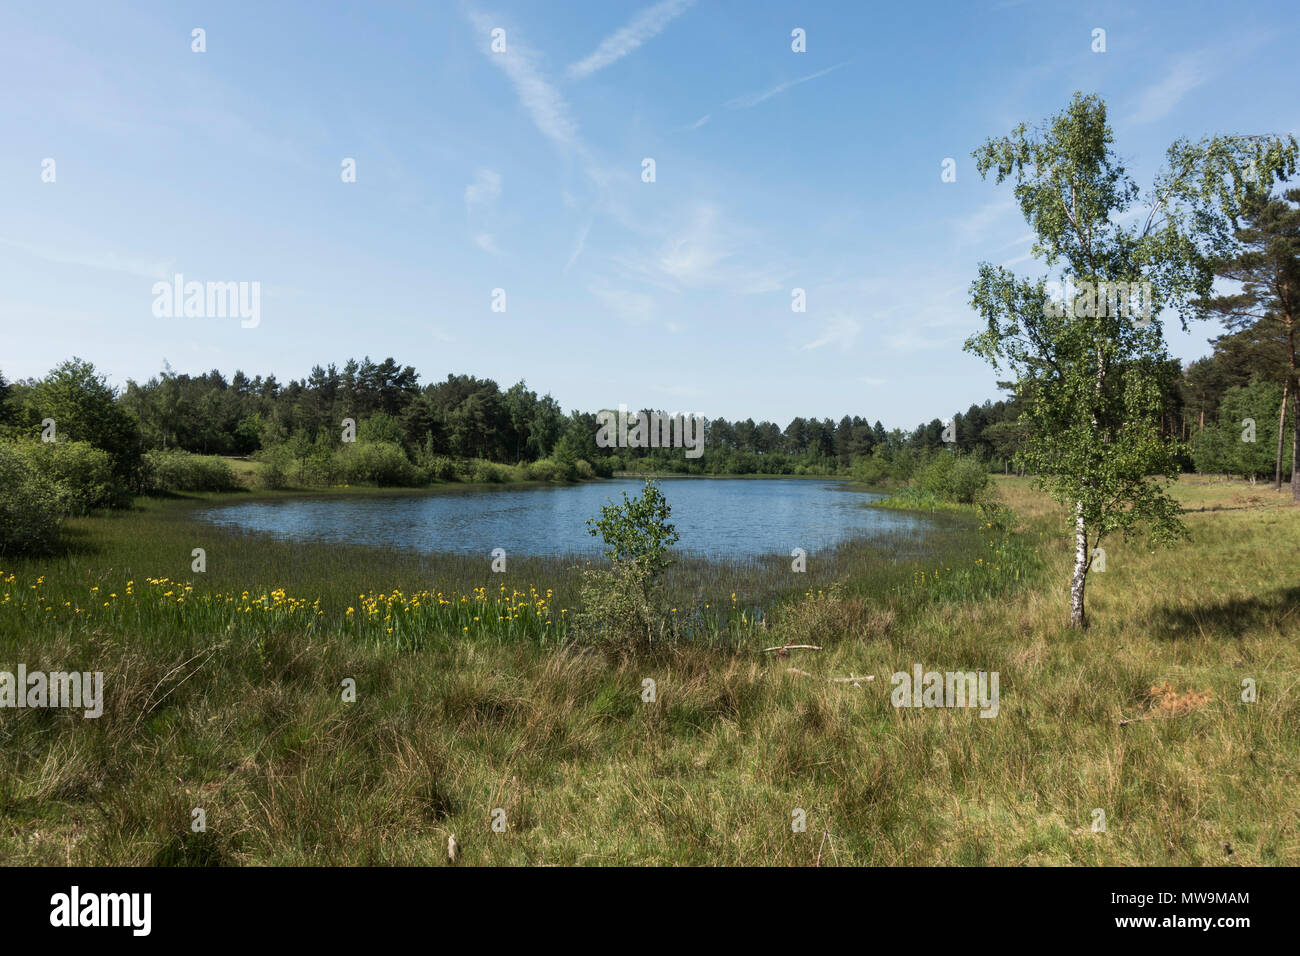 Paysage d'Teverener Tevener Heide, Heide, Landes, nature park, Schinveld-Brunssum, Pays-Bas, Allemagne, Gangelt Banque D'Images